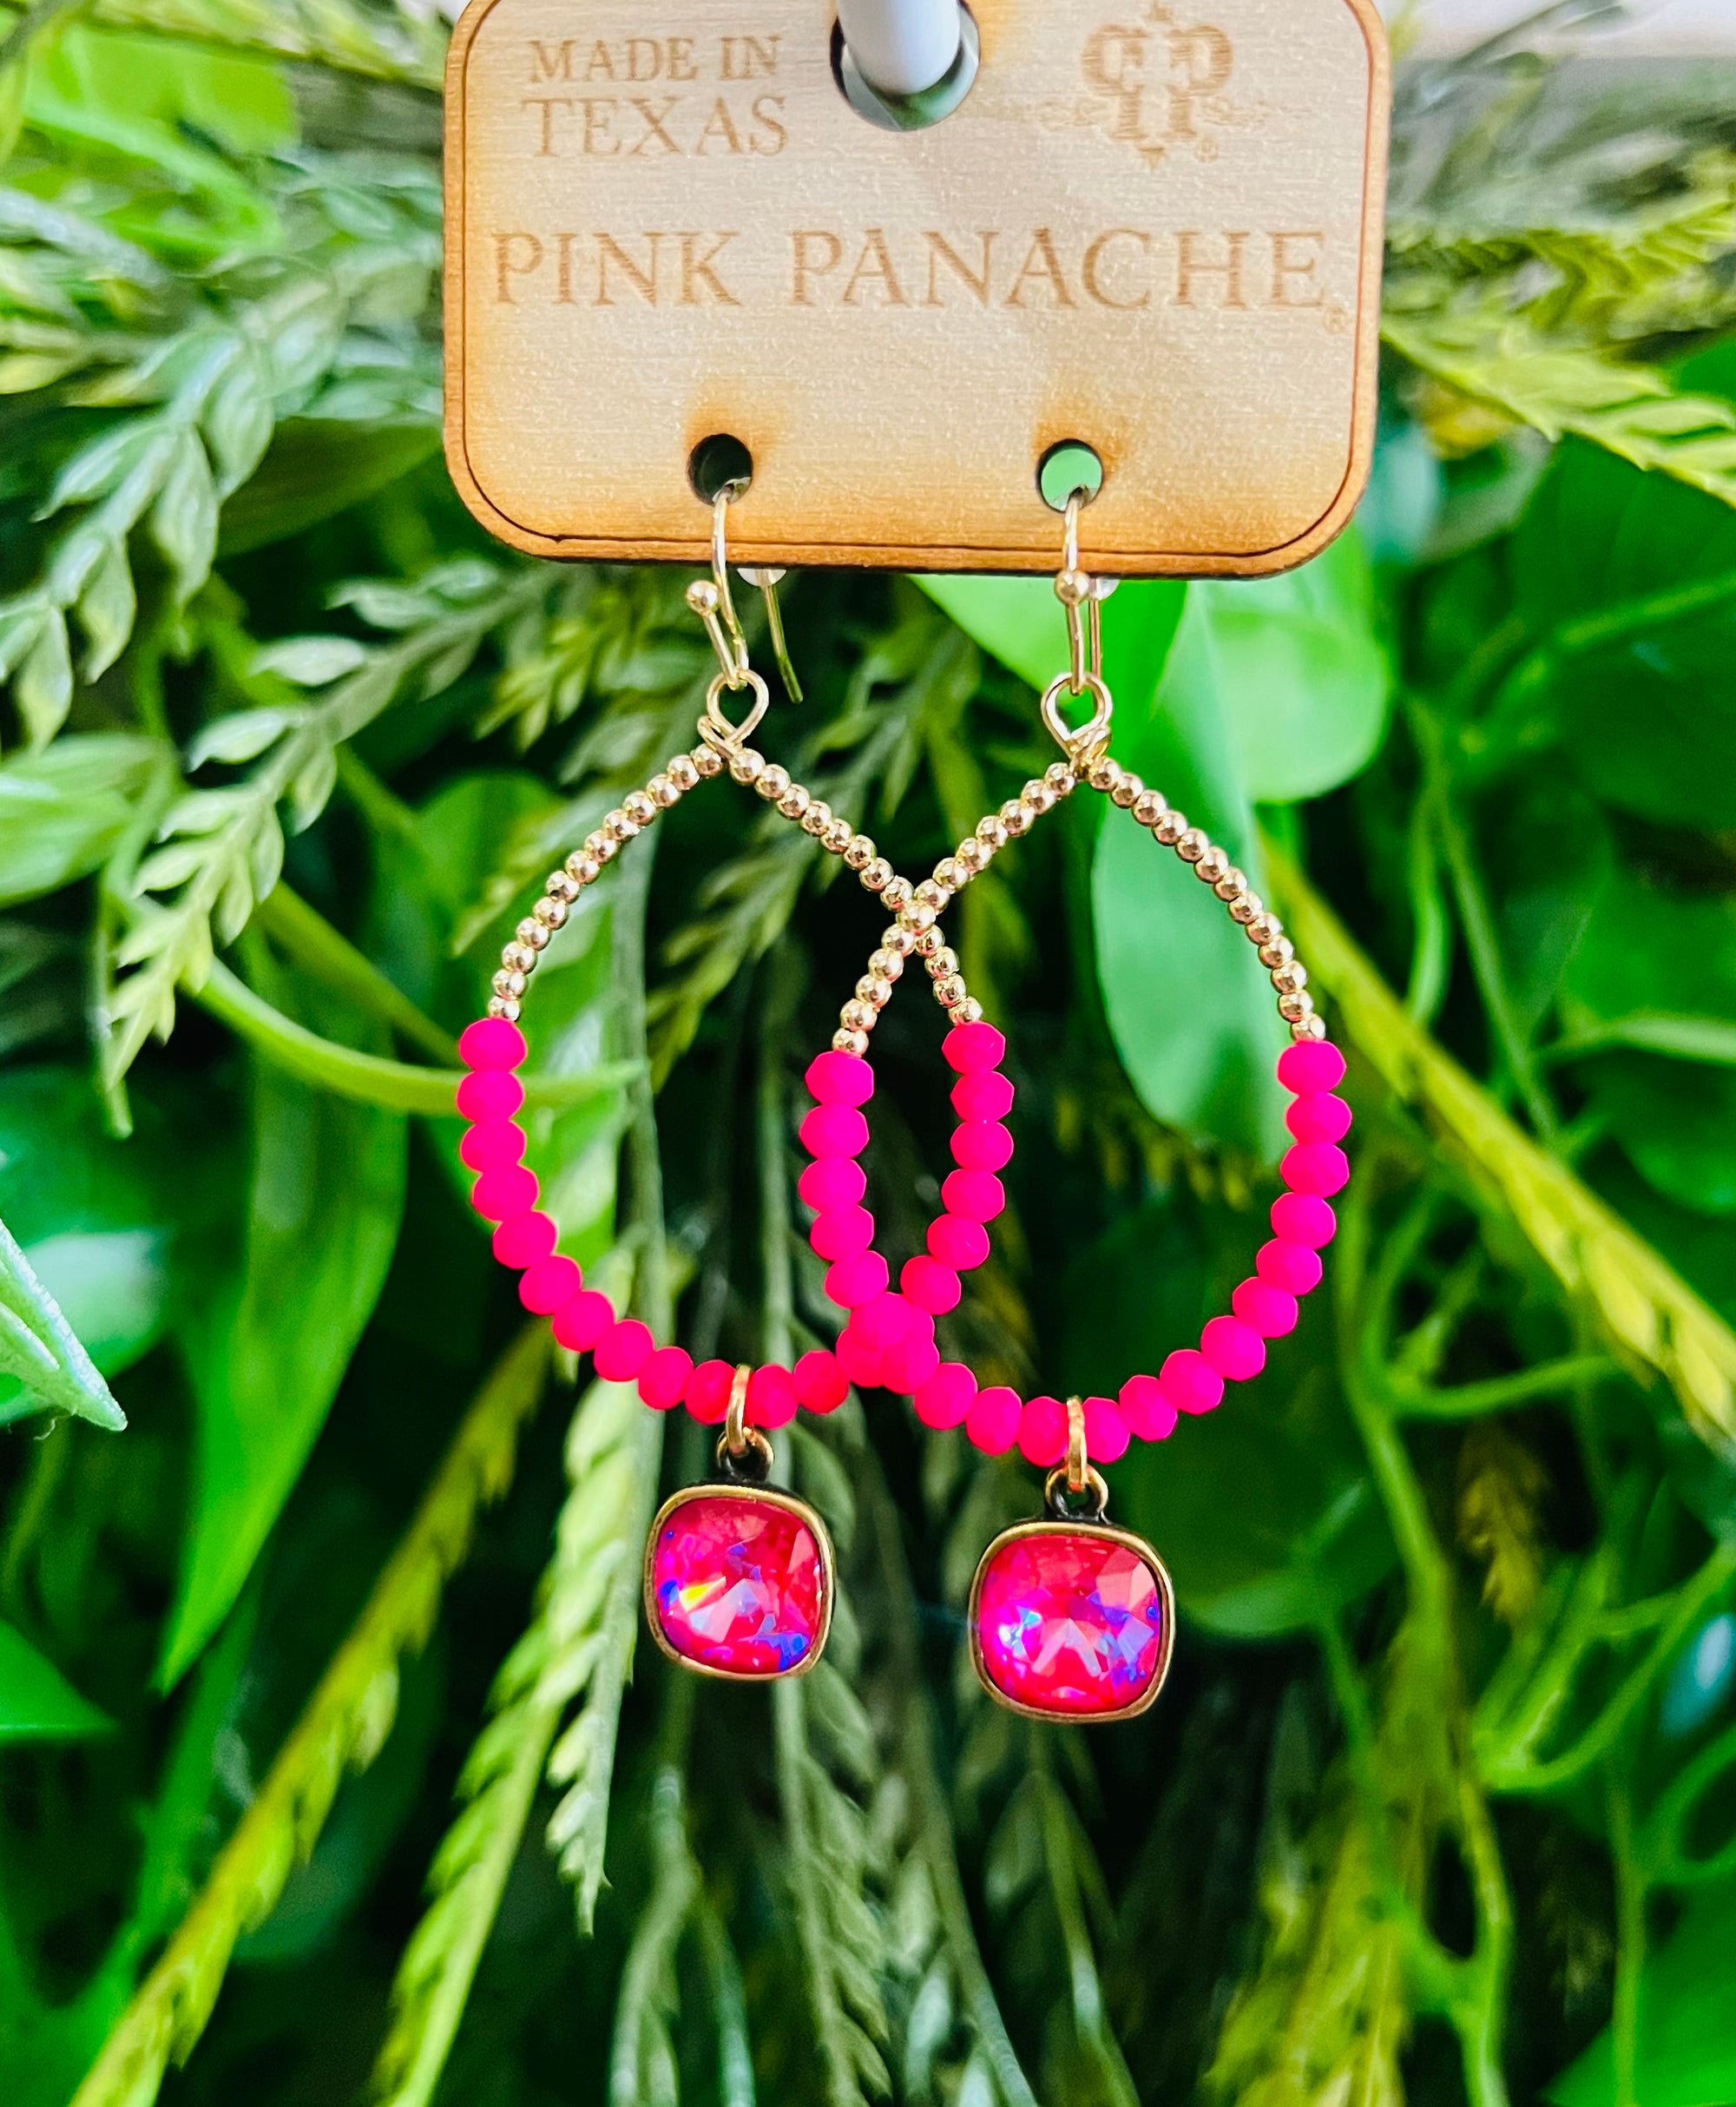 Pink Panache Hot Pink Teardrop Earrings